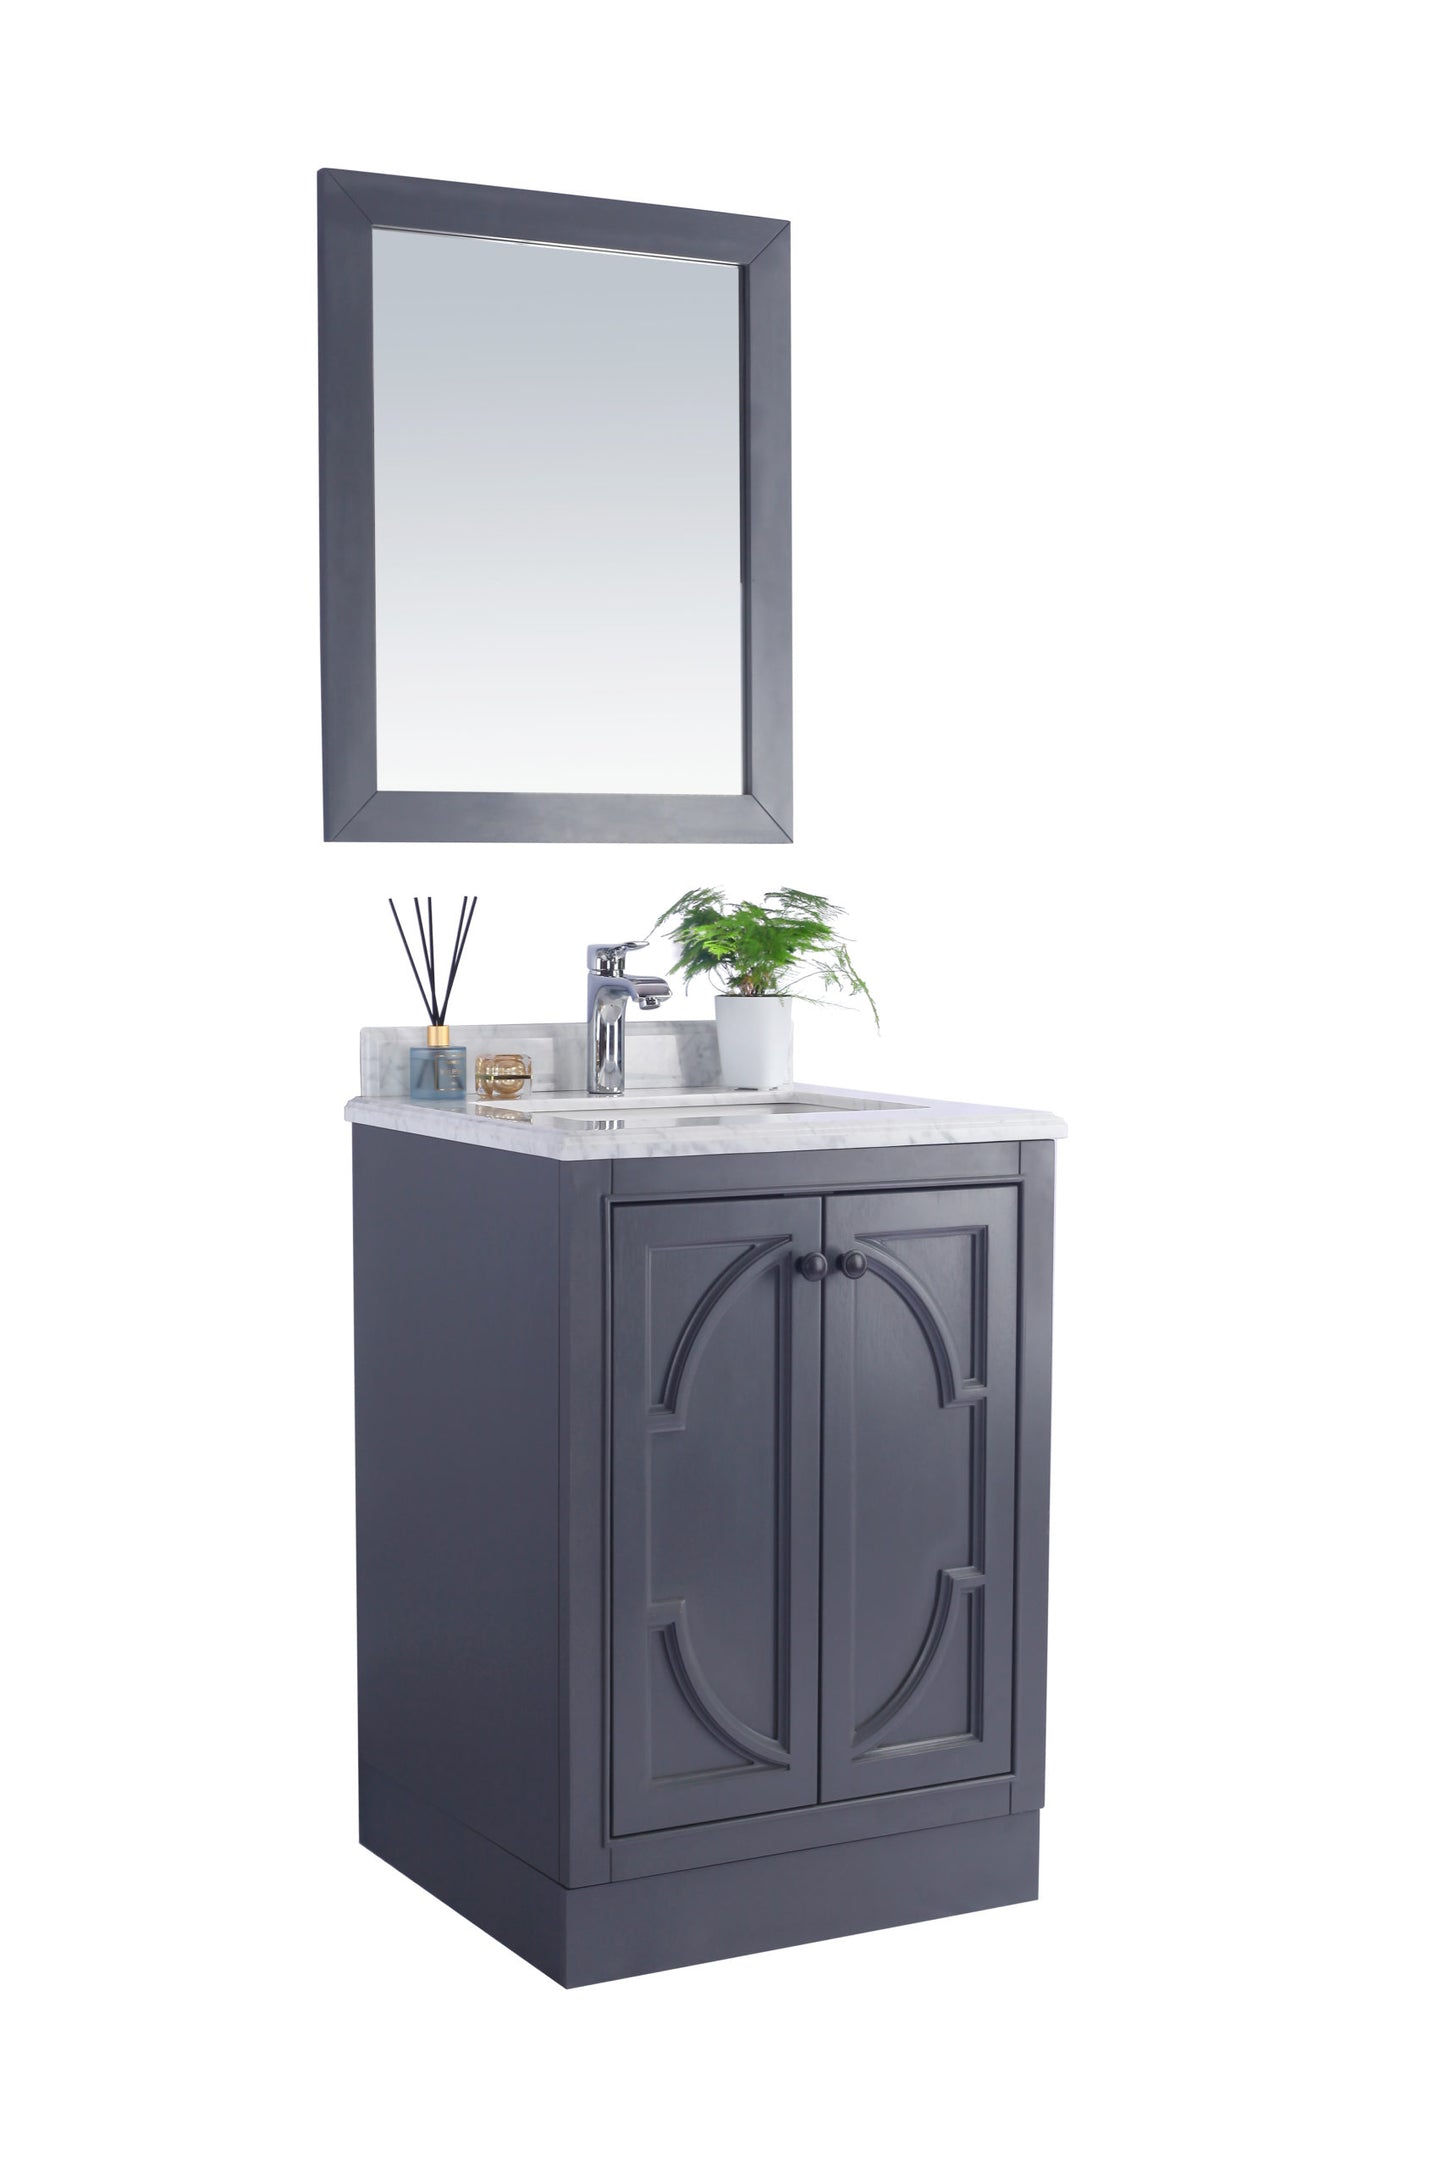 Odyssey 24" Maple Grey Bathroom Vanity with White Quartz Countertop